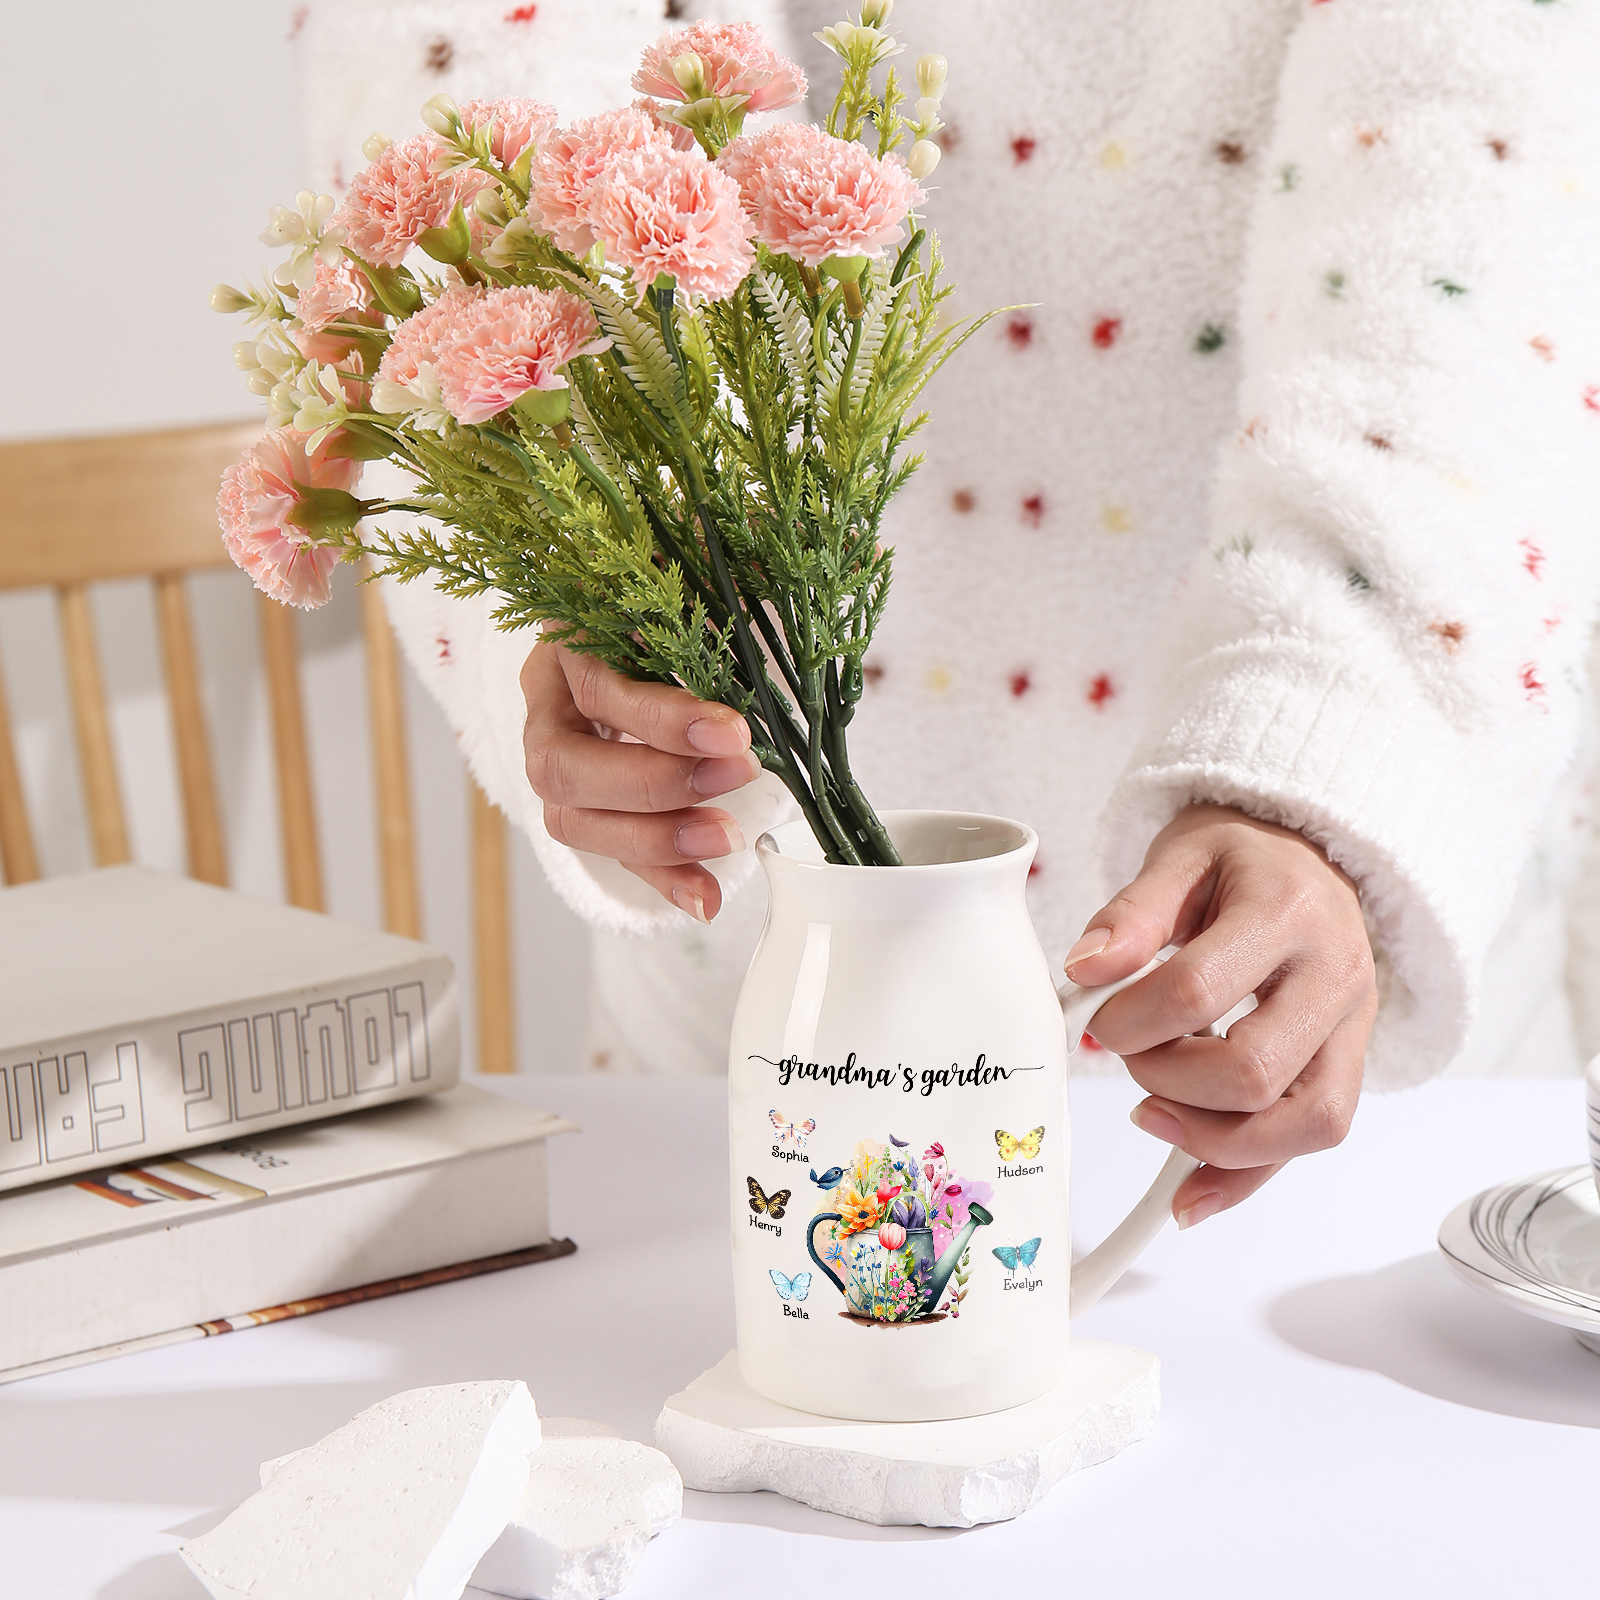 5 Names - Personalized Name "Grandma's Garden" Ceramic Vase as a Gift for Grandma